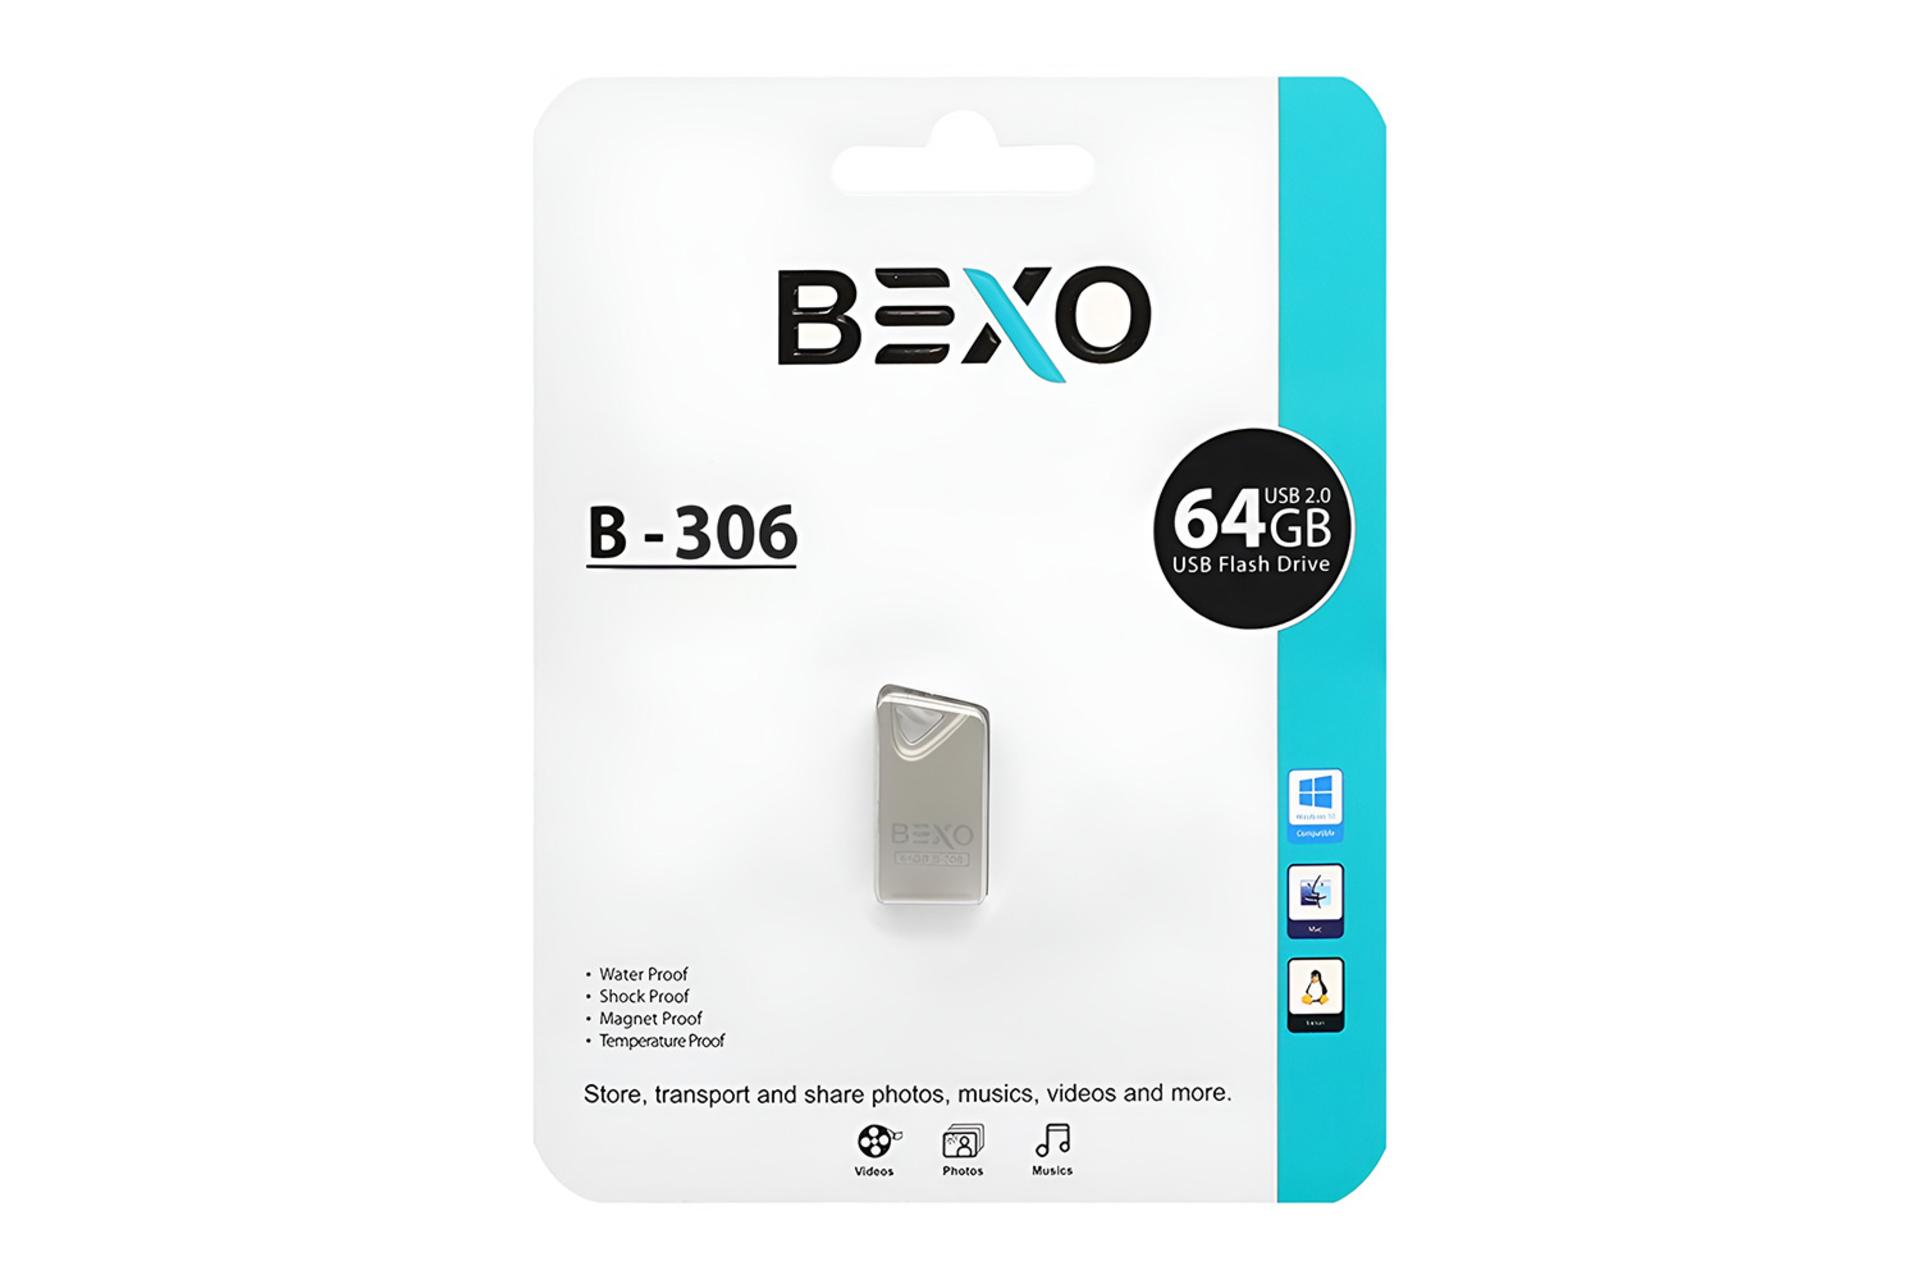 جعبه فلش مموری بکسومن BEXOman B-306 64GB USB 2.0